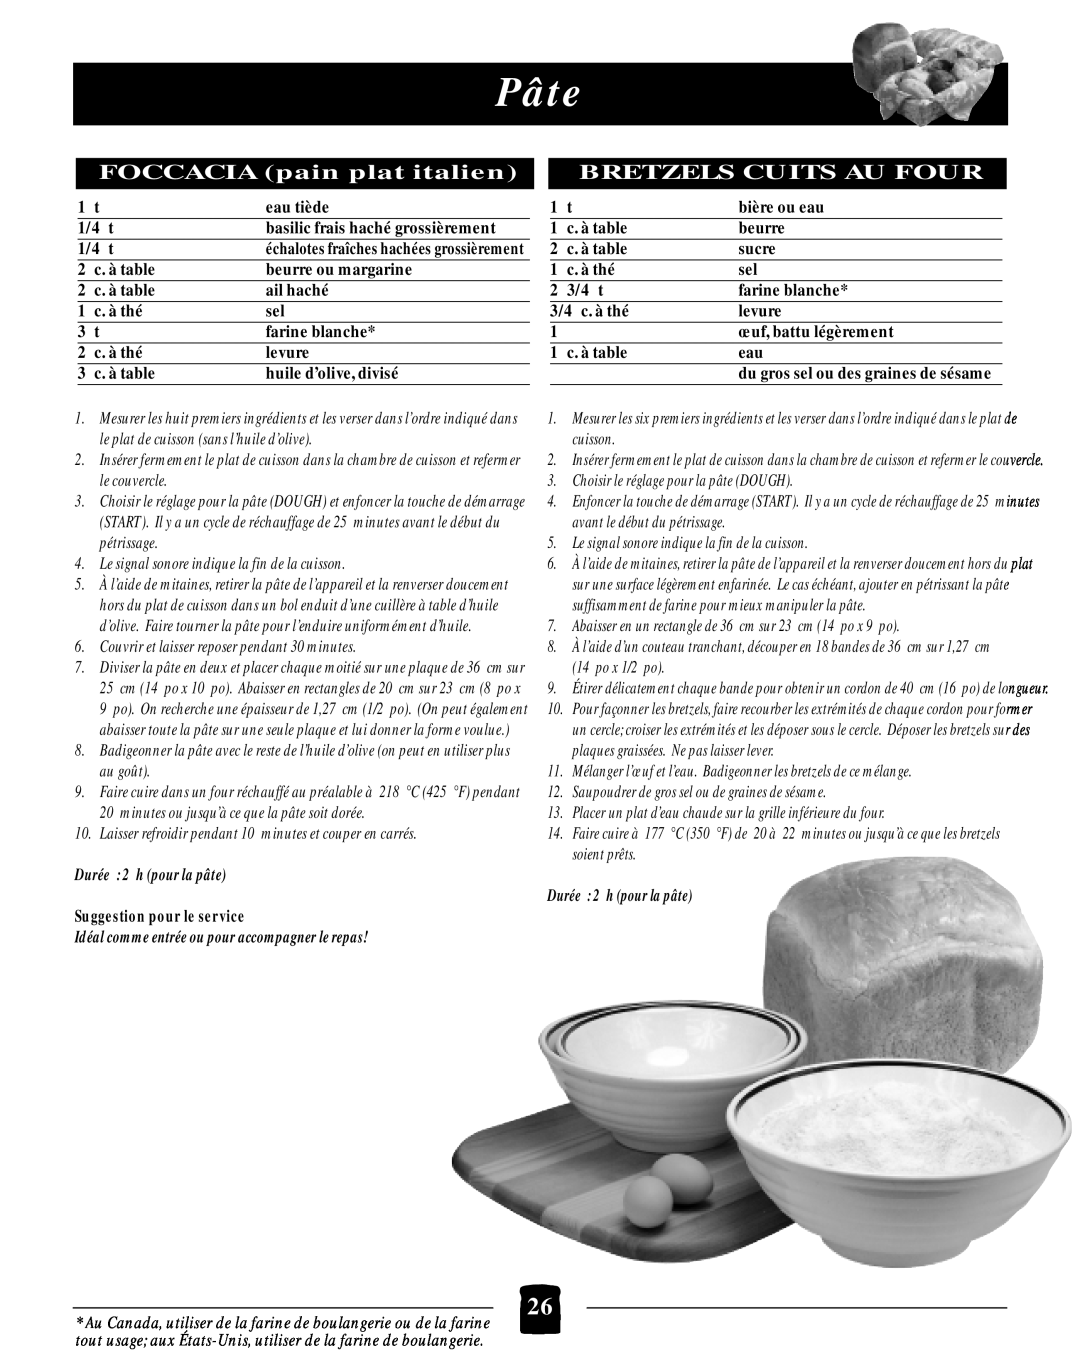 Black & Decker B2005 manual Pâte, FOCCACIA pain plat italien BRETZELS CUITS AU FOUR, Durée 2 h pour la pâte 